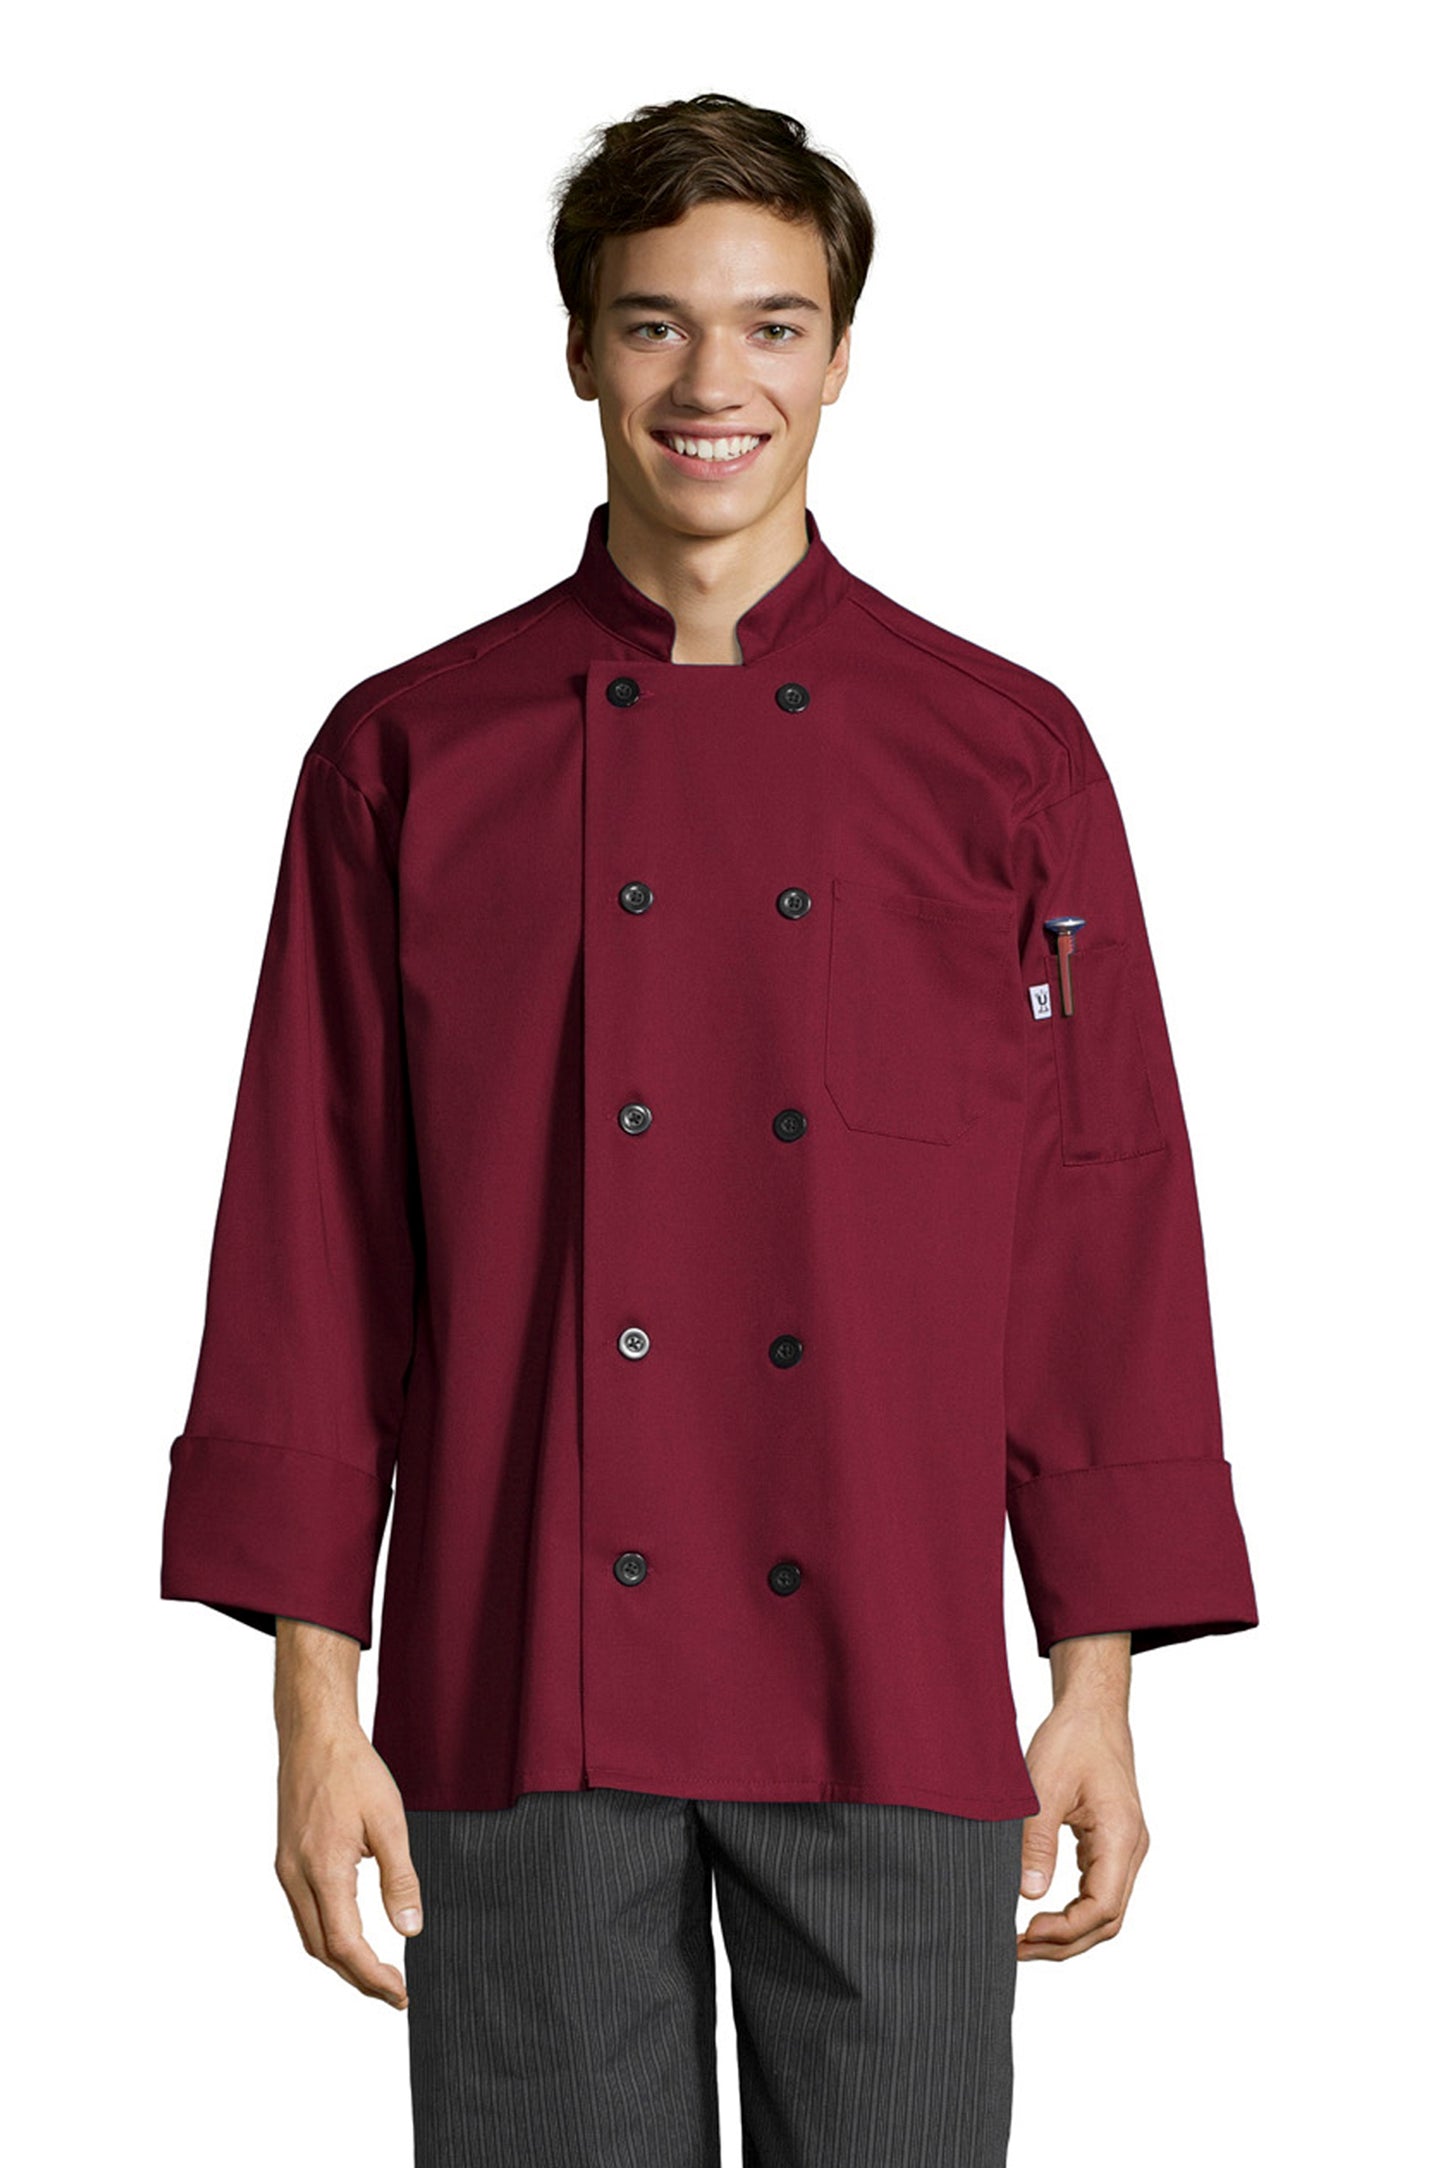 Moroccan Chef Coat #0405 *Closeout* (All Sales Final No Returns)